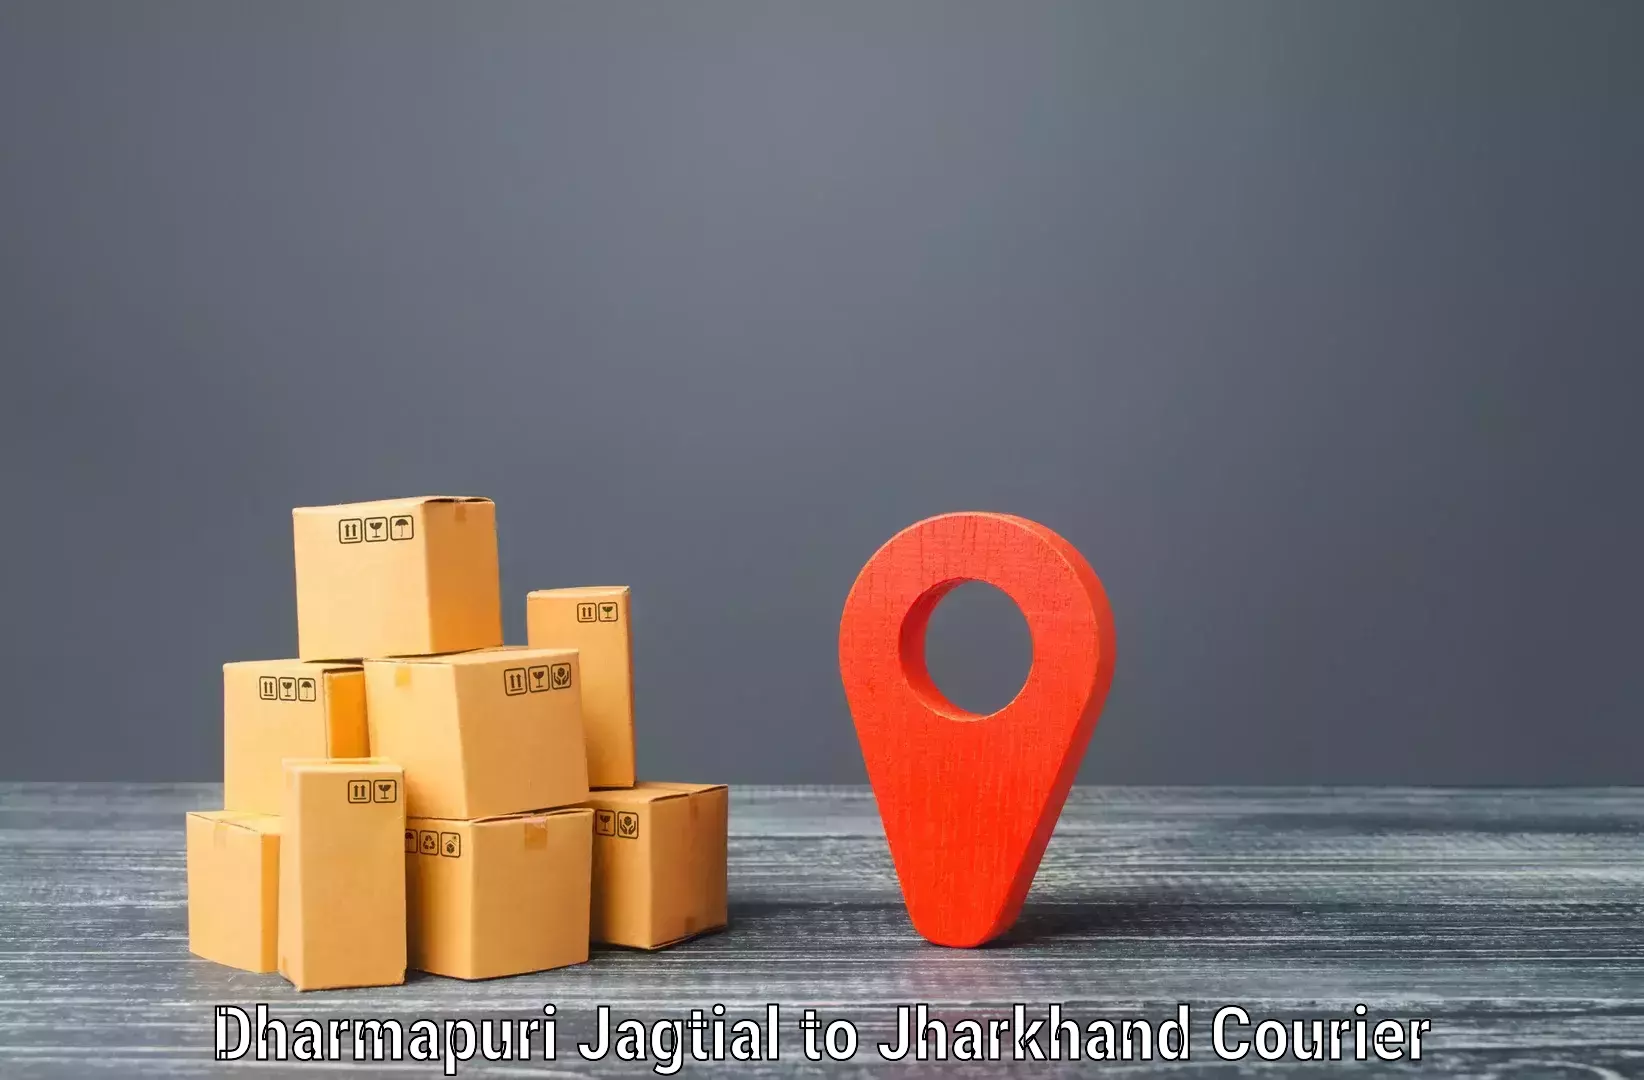 Courier service efficiency Dharmapuri Jagtial to IIIT Ranchi